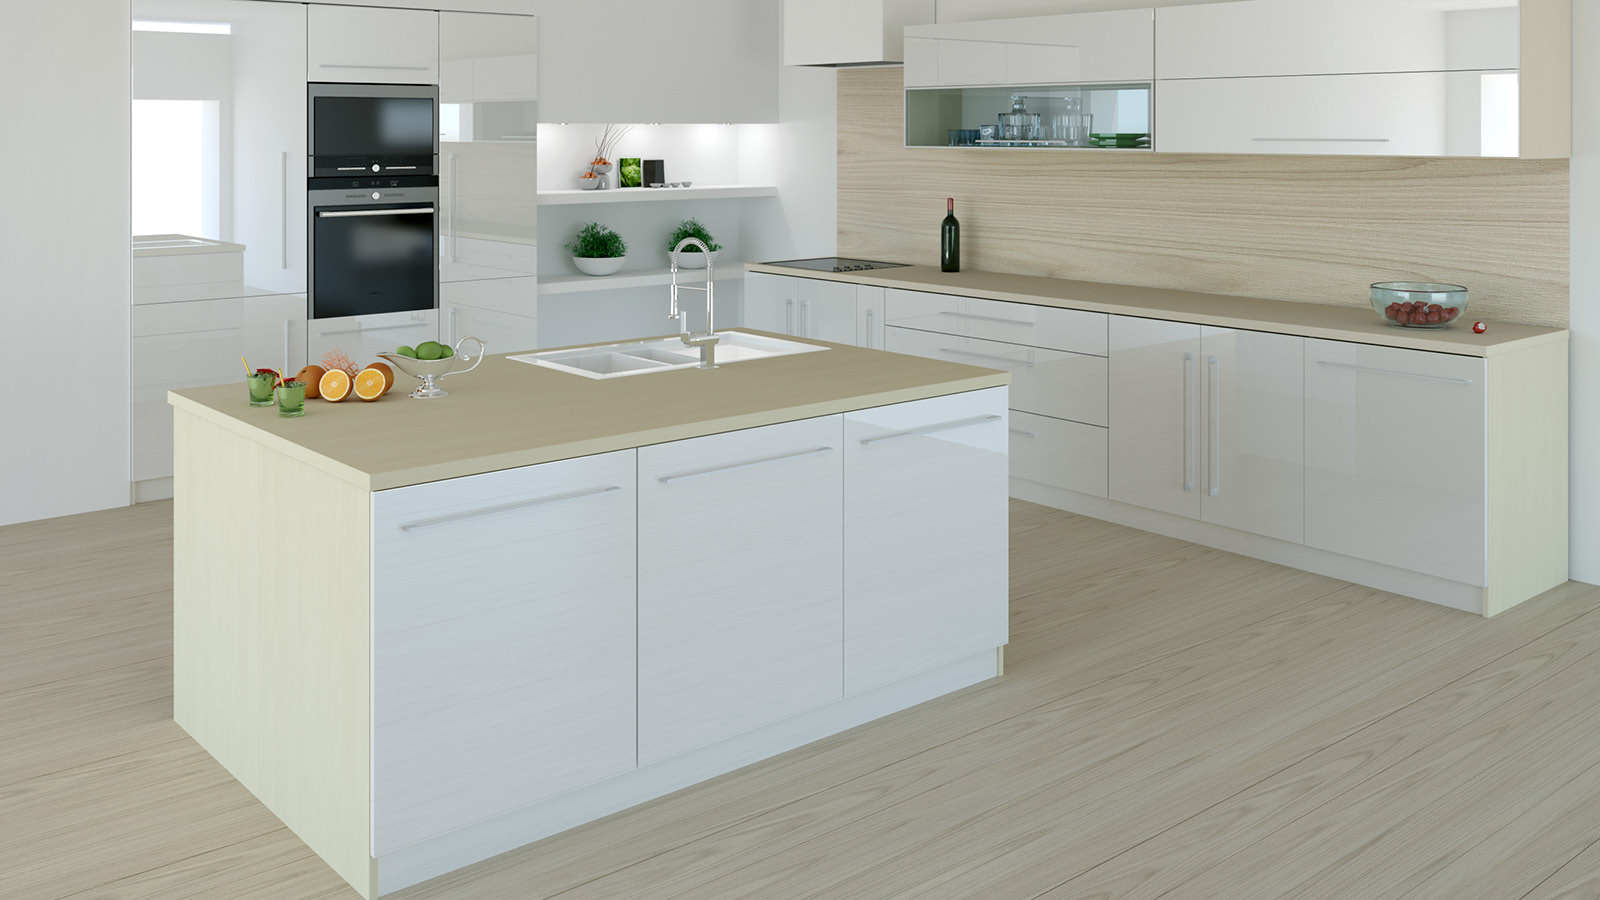 Jasne pomieszczenie kuchenne tworzy połączenie białych mebli z dębowymi elementami blatów, ścianki oraz paneli podłogowych.